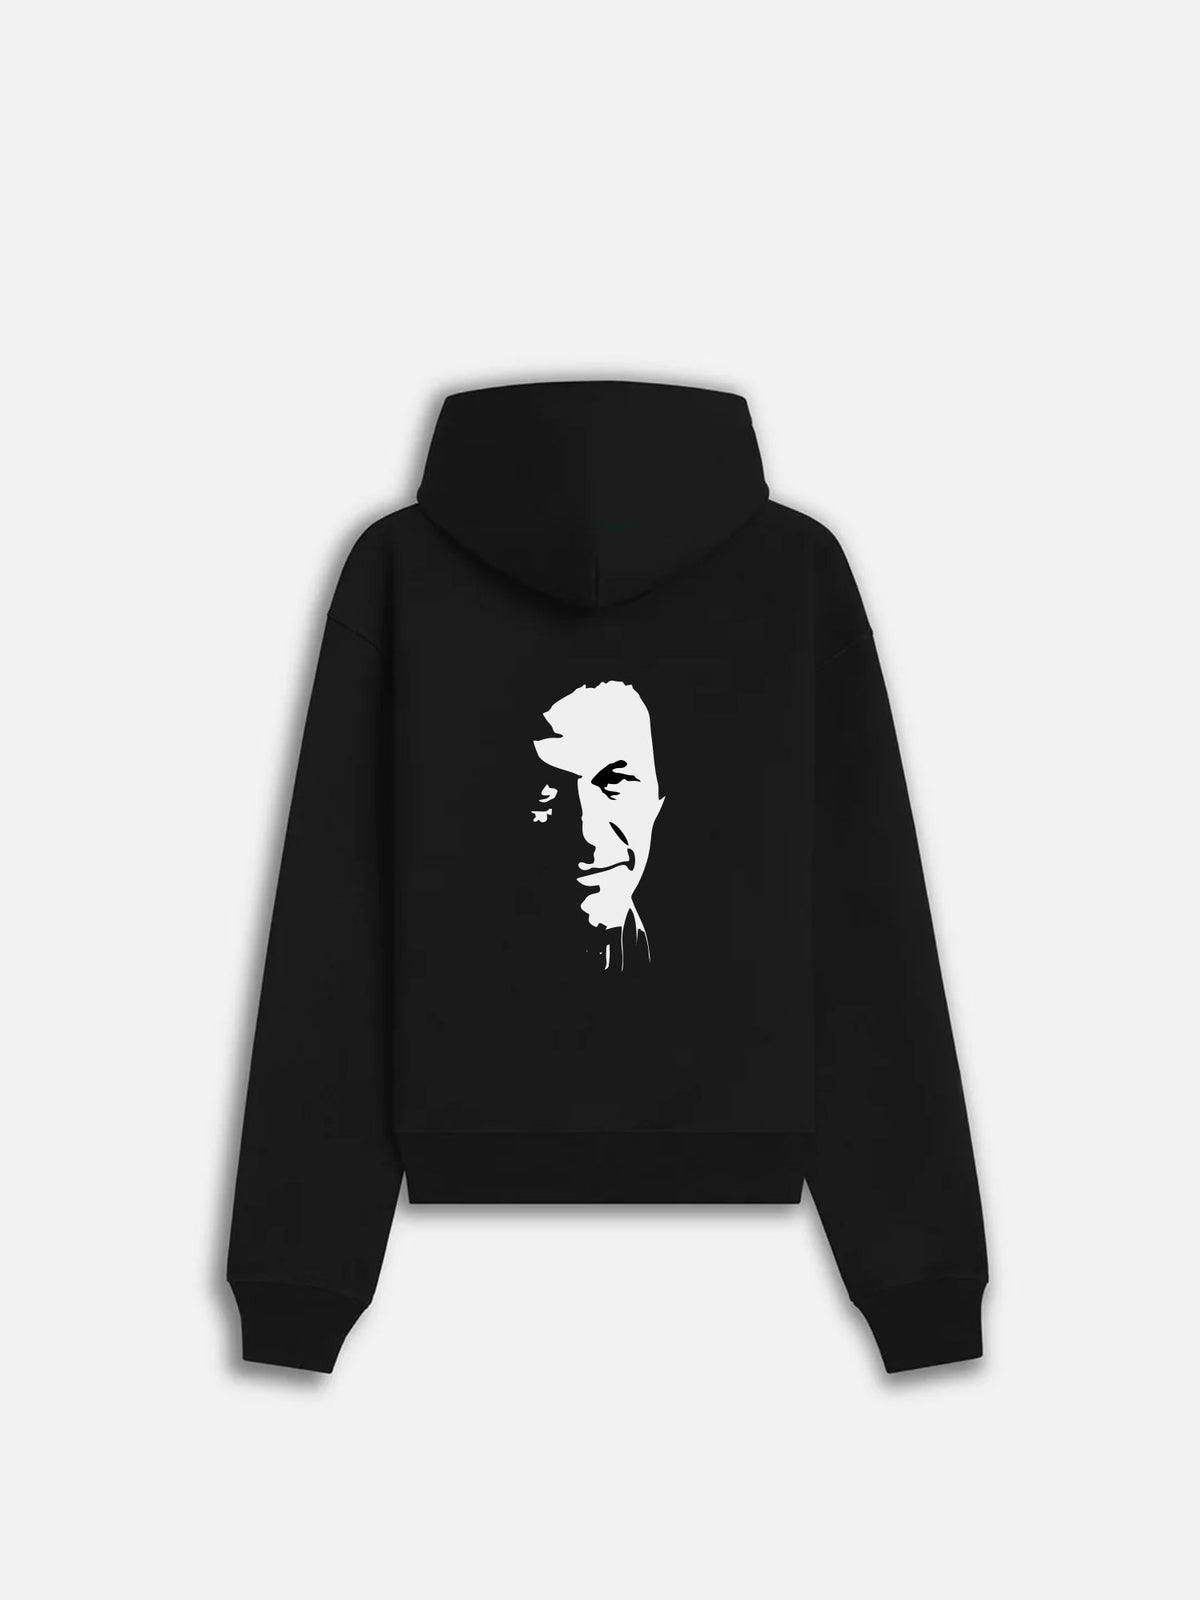 Imran Khan Smile art - hoodie